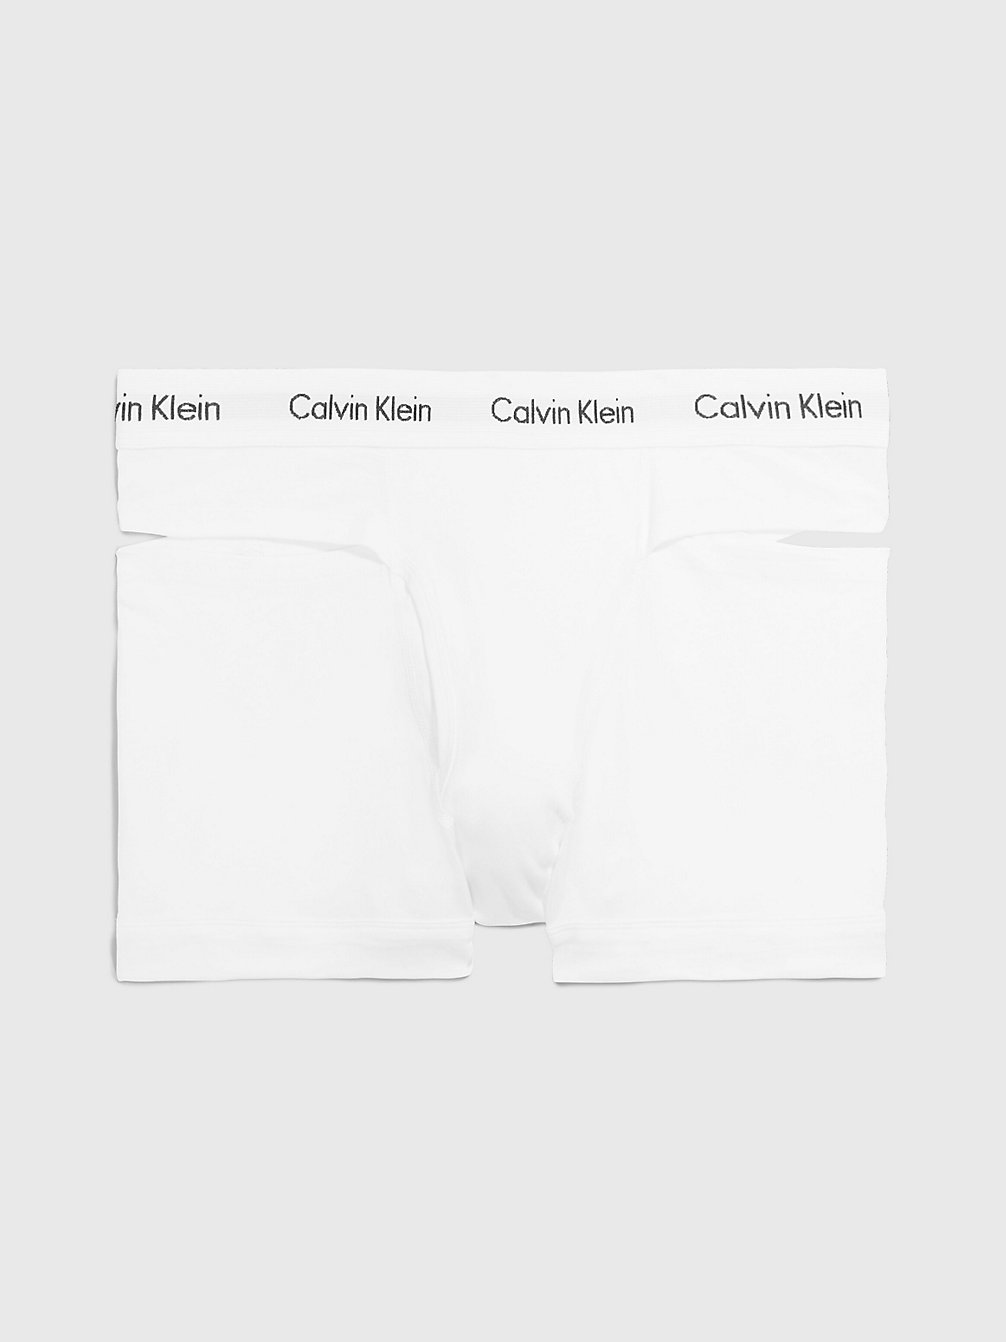 WHITE Boxer Shorts - CK Deconstructed undefined Herren Calvin Klein